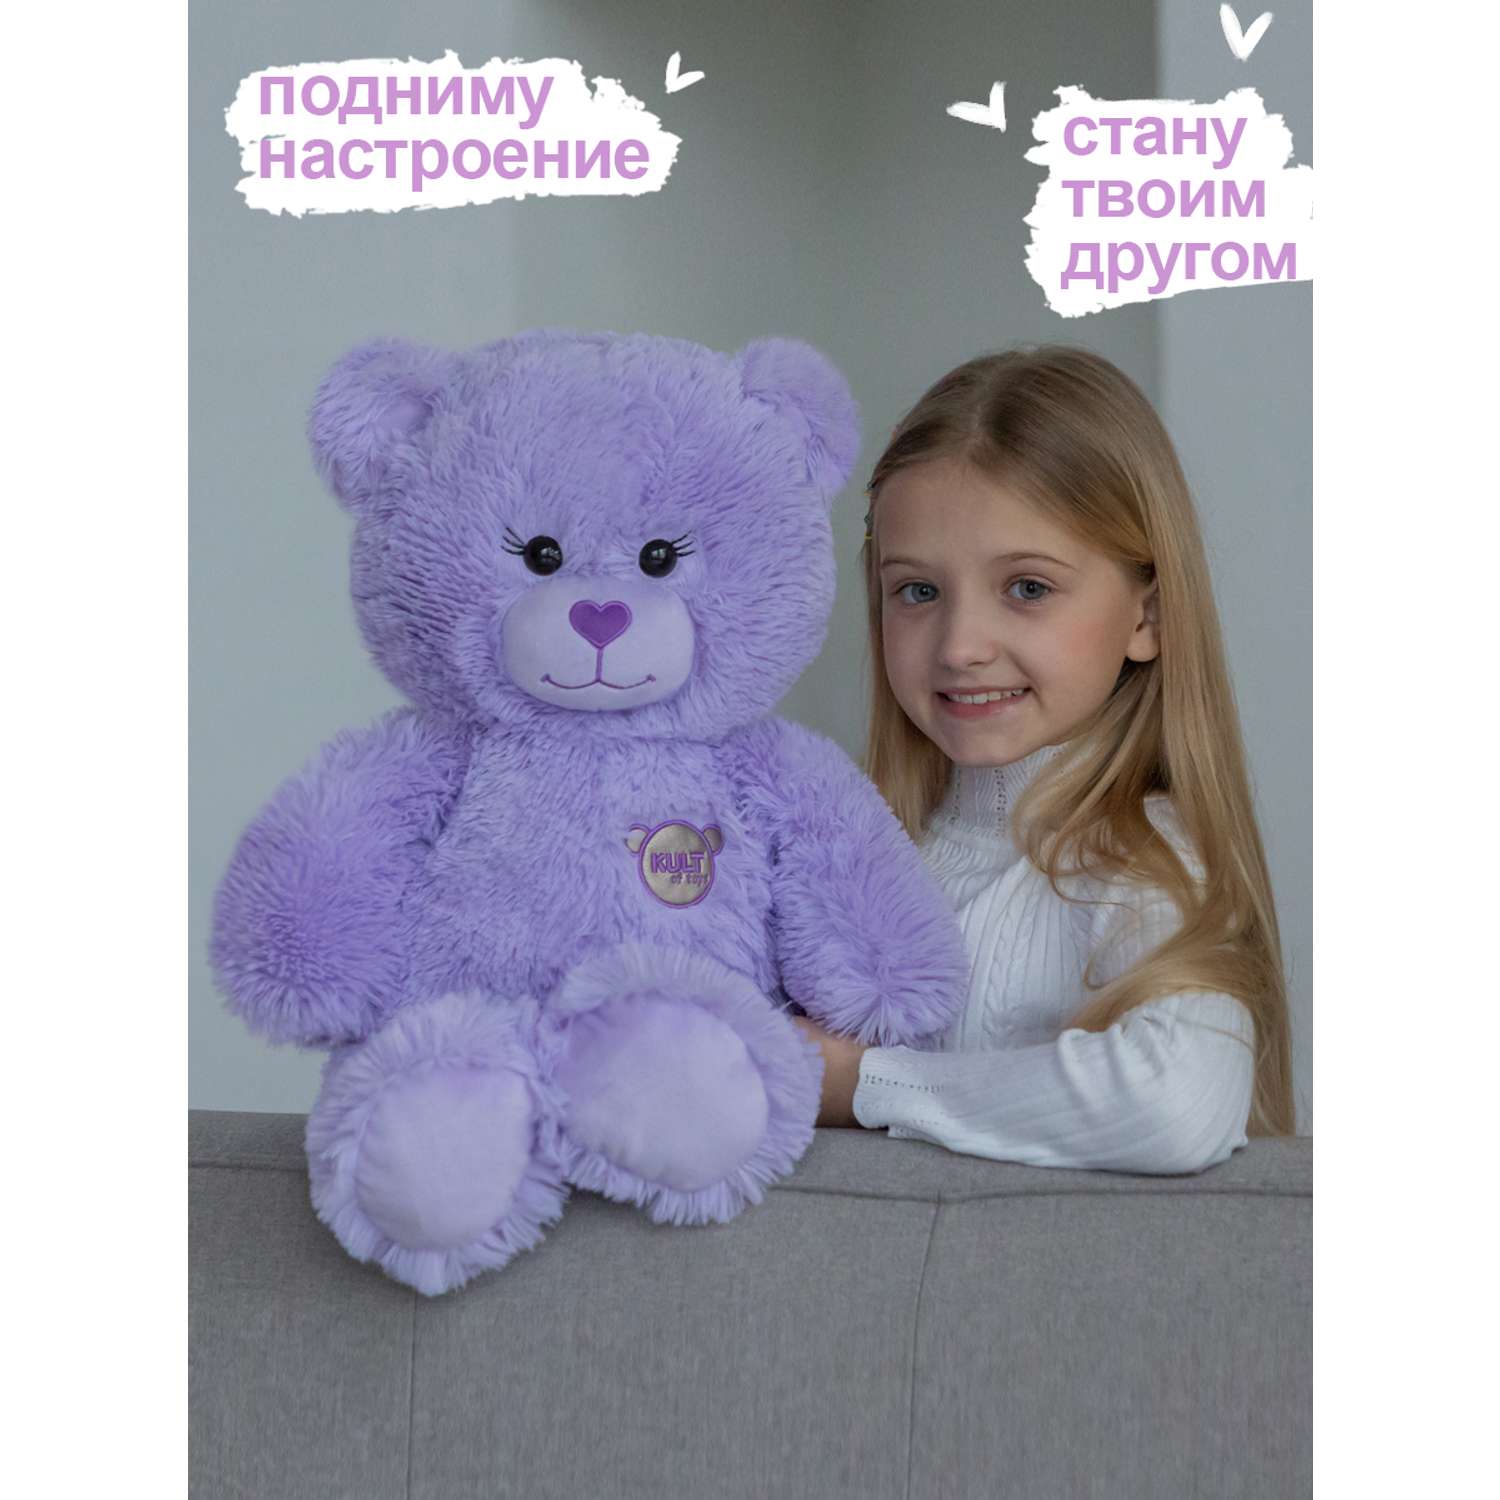 Мягкая игрушка KULT of toys Плюшевый медведь Color 65 см цвет сиреневый - фото 3